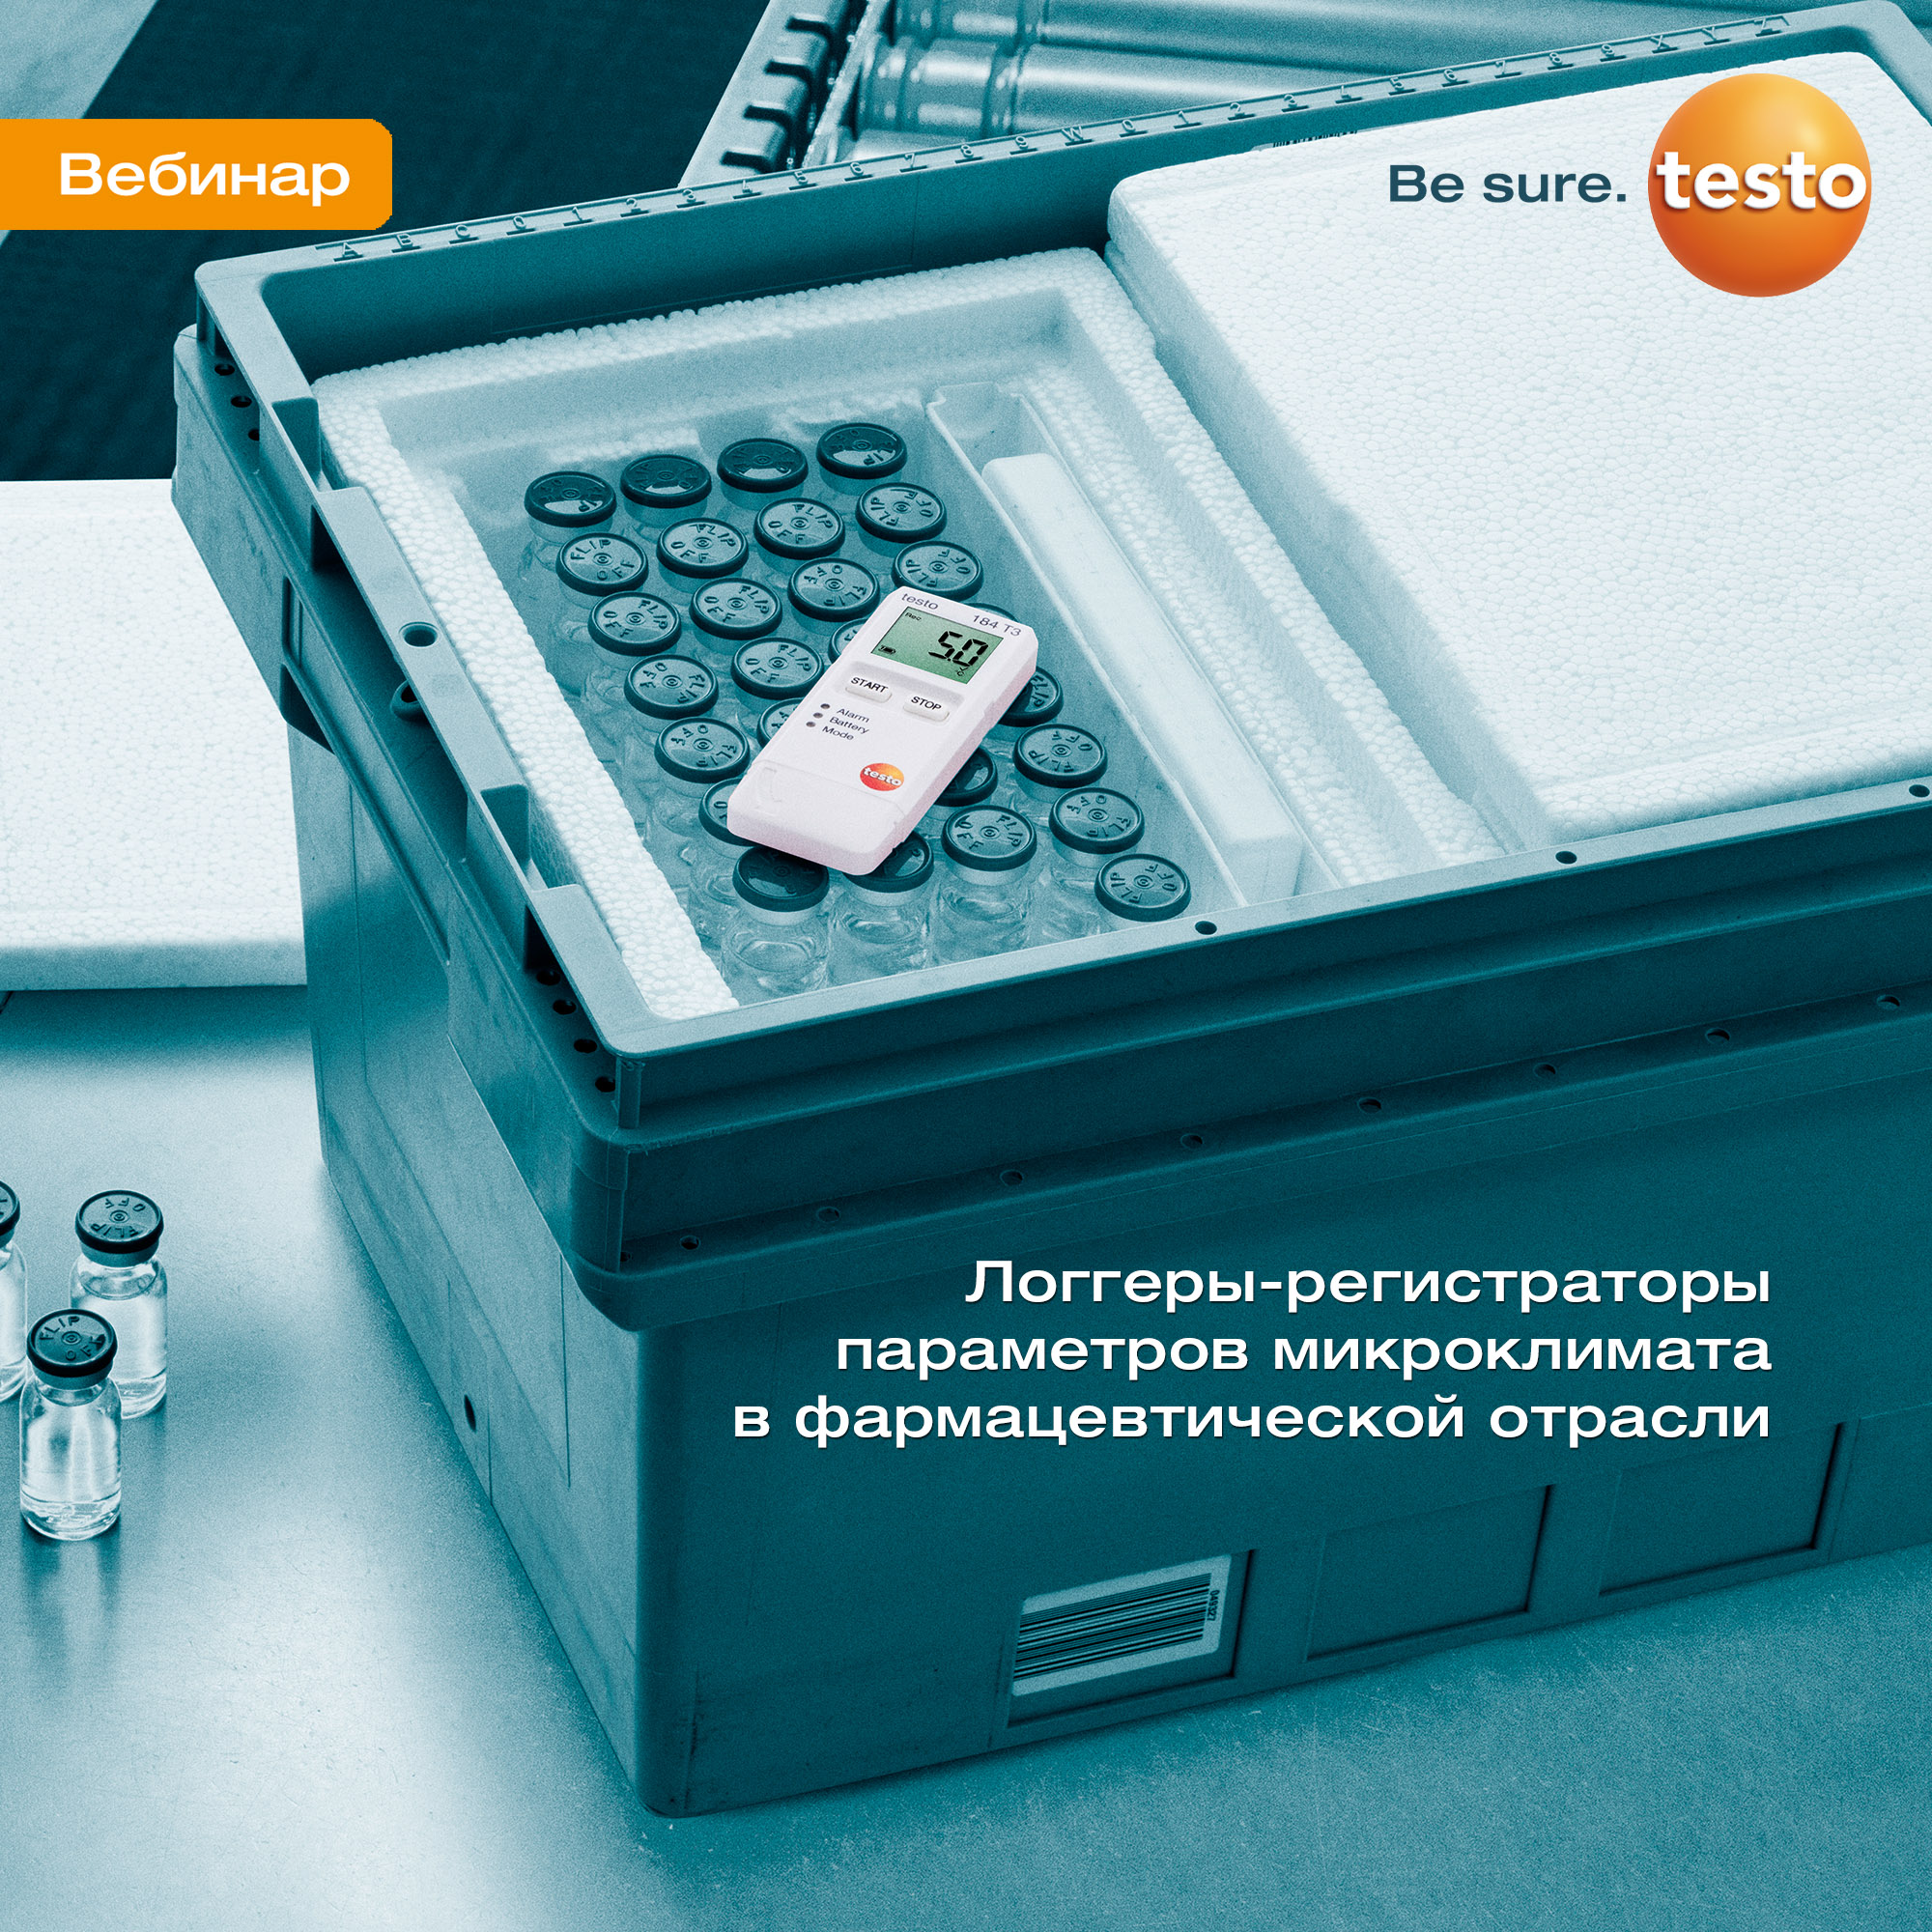 vebinar-loggery-registratory-parametrov-mikroklimata-v-farmacevticheskoj-otrasli